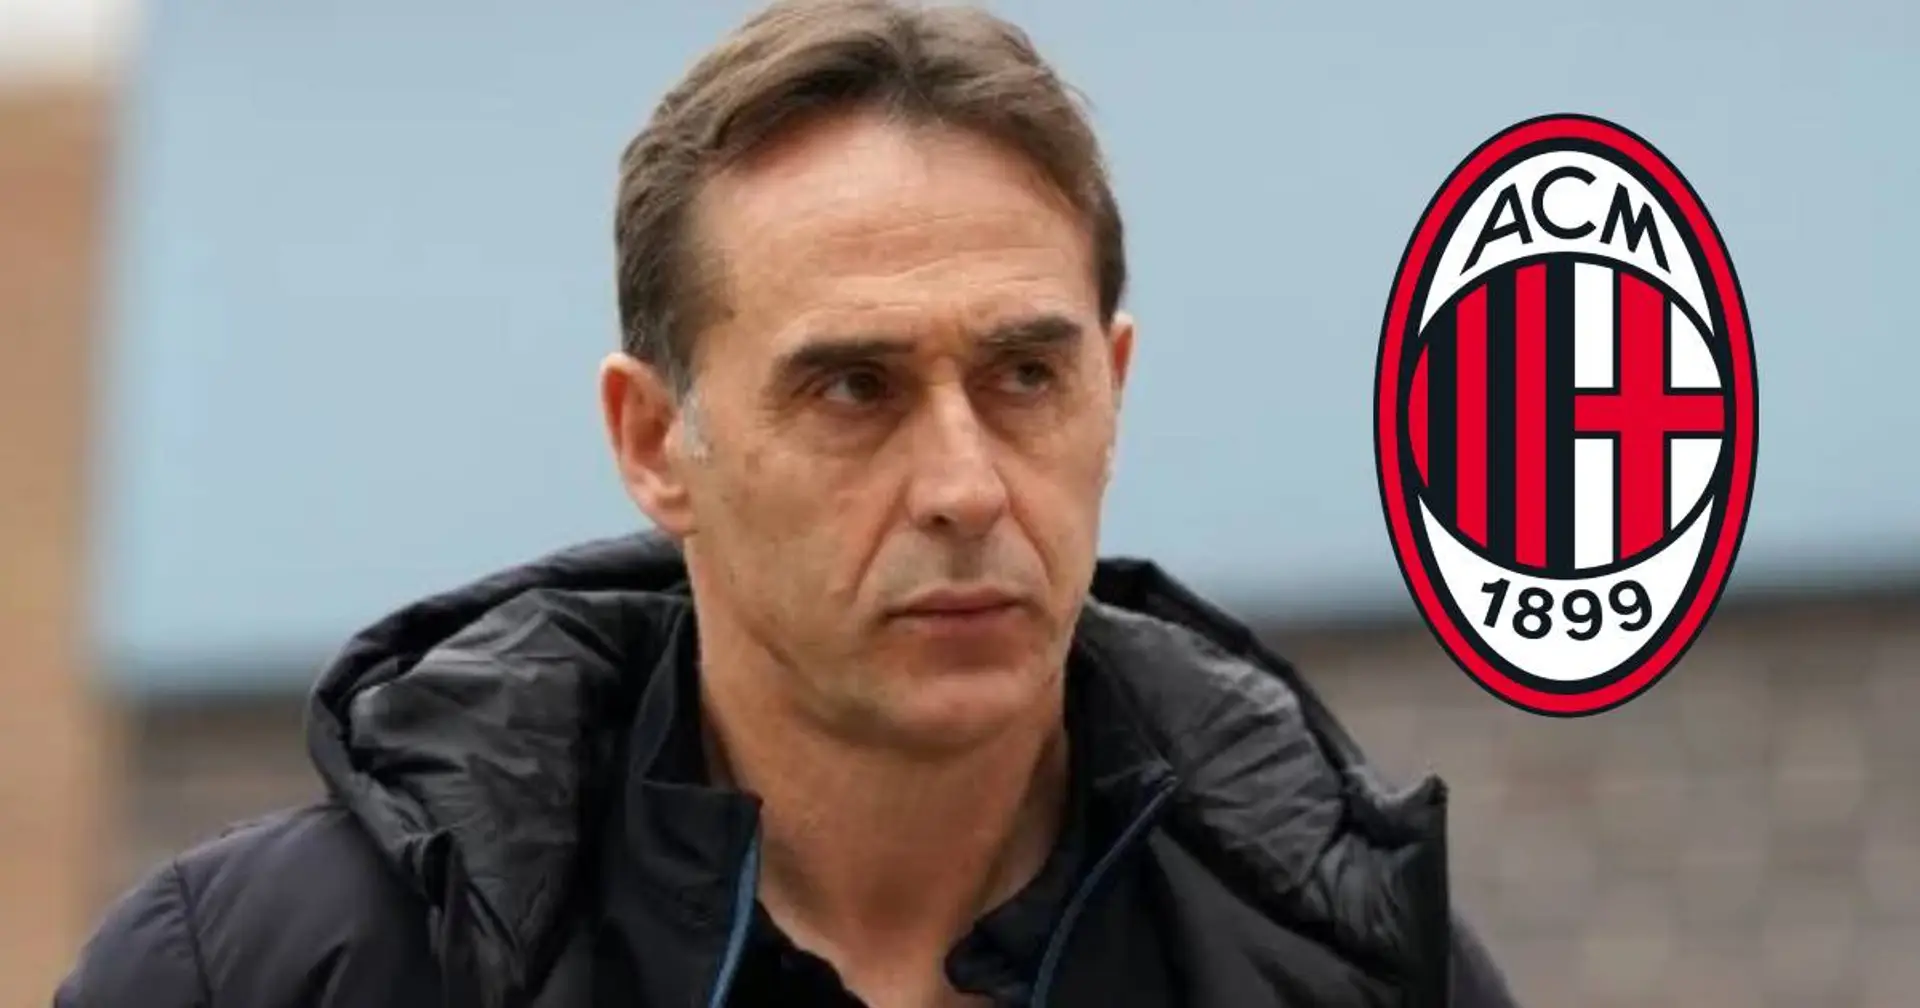 "Tifosi del Milan, perché siete contro Lopetegui?": un giornalista spiega pregi e difetti del possibile nuovo tecnico rossonero